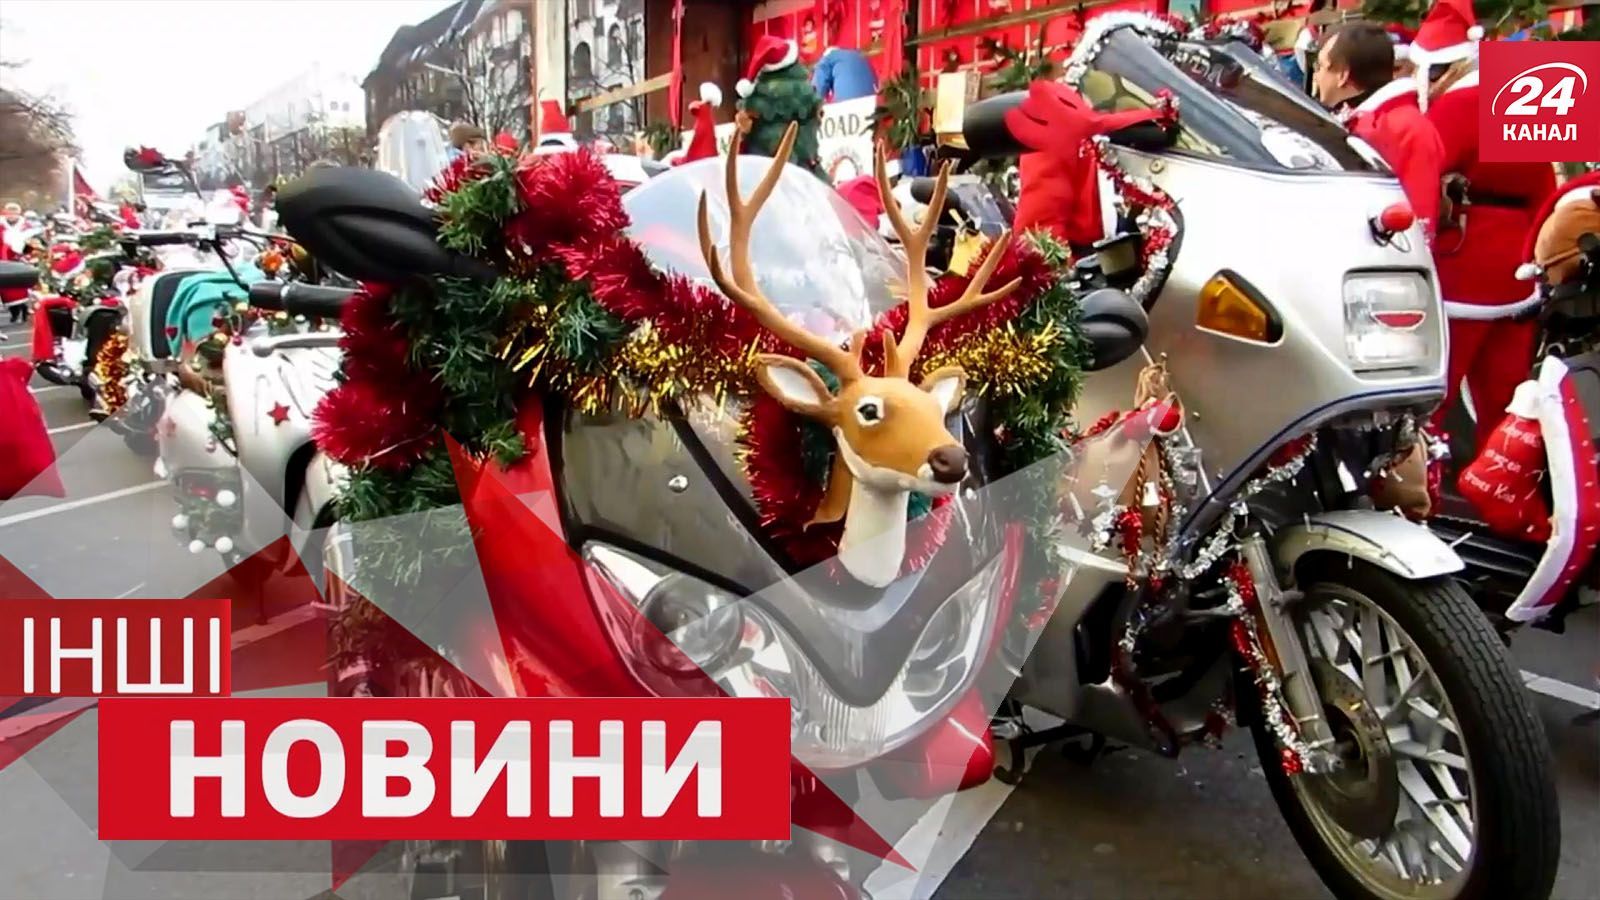 ІНШІ новини. Шалені розваги тисяч Санта Клаусів та російські двірники "верхи" на лопатах